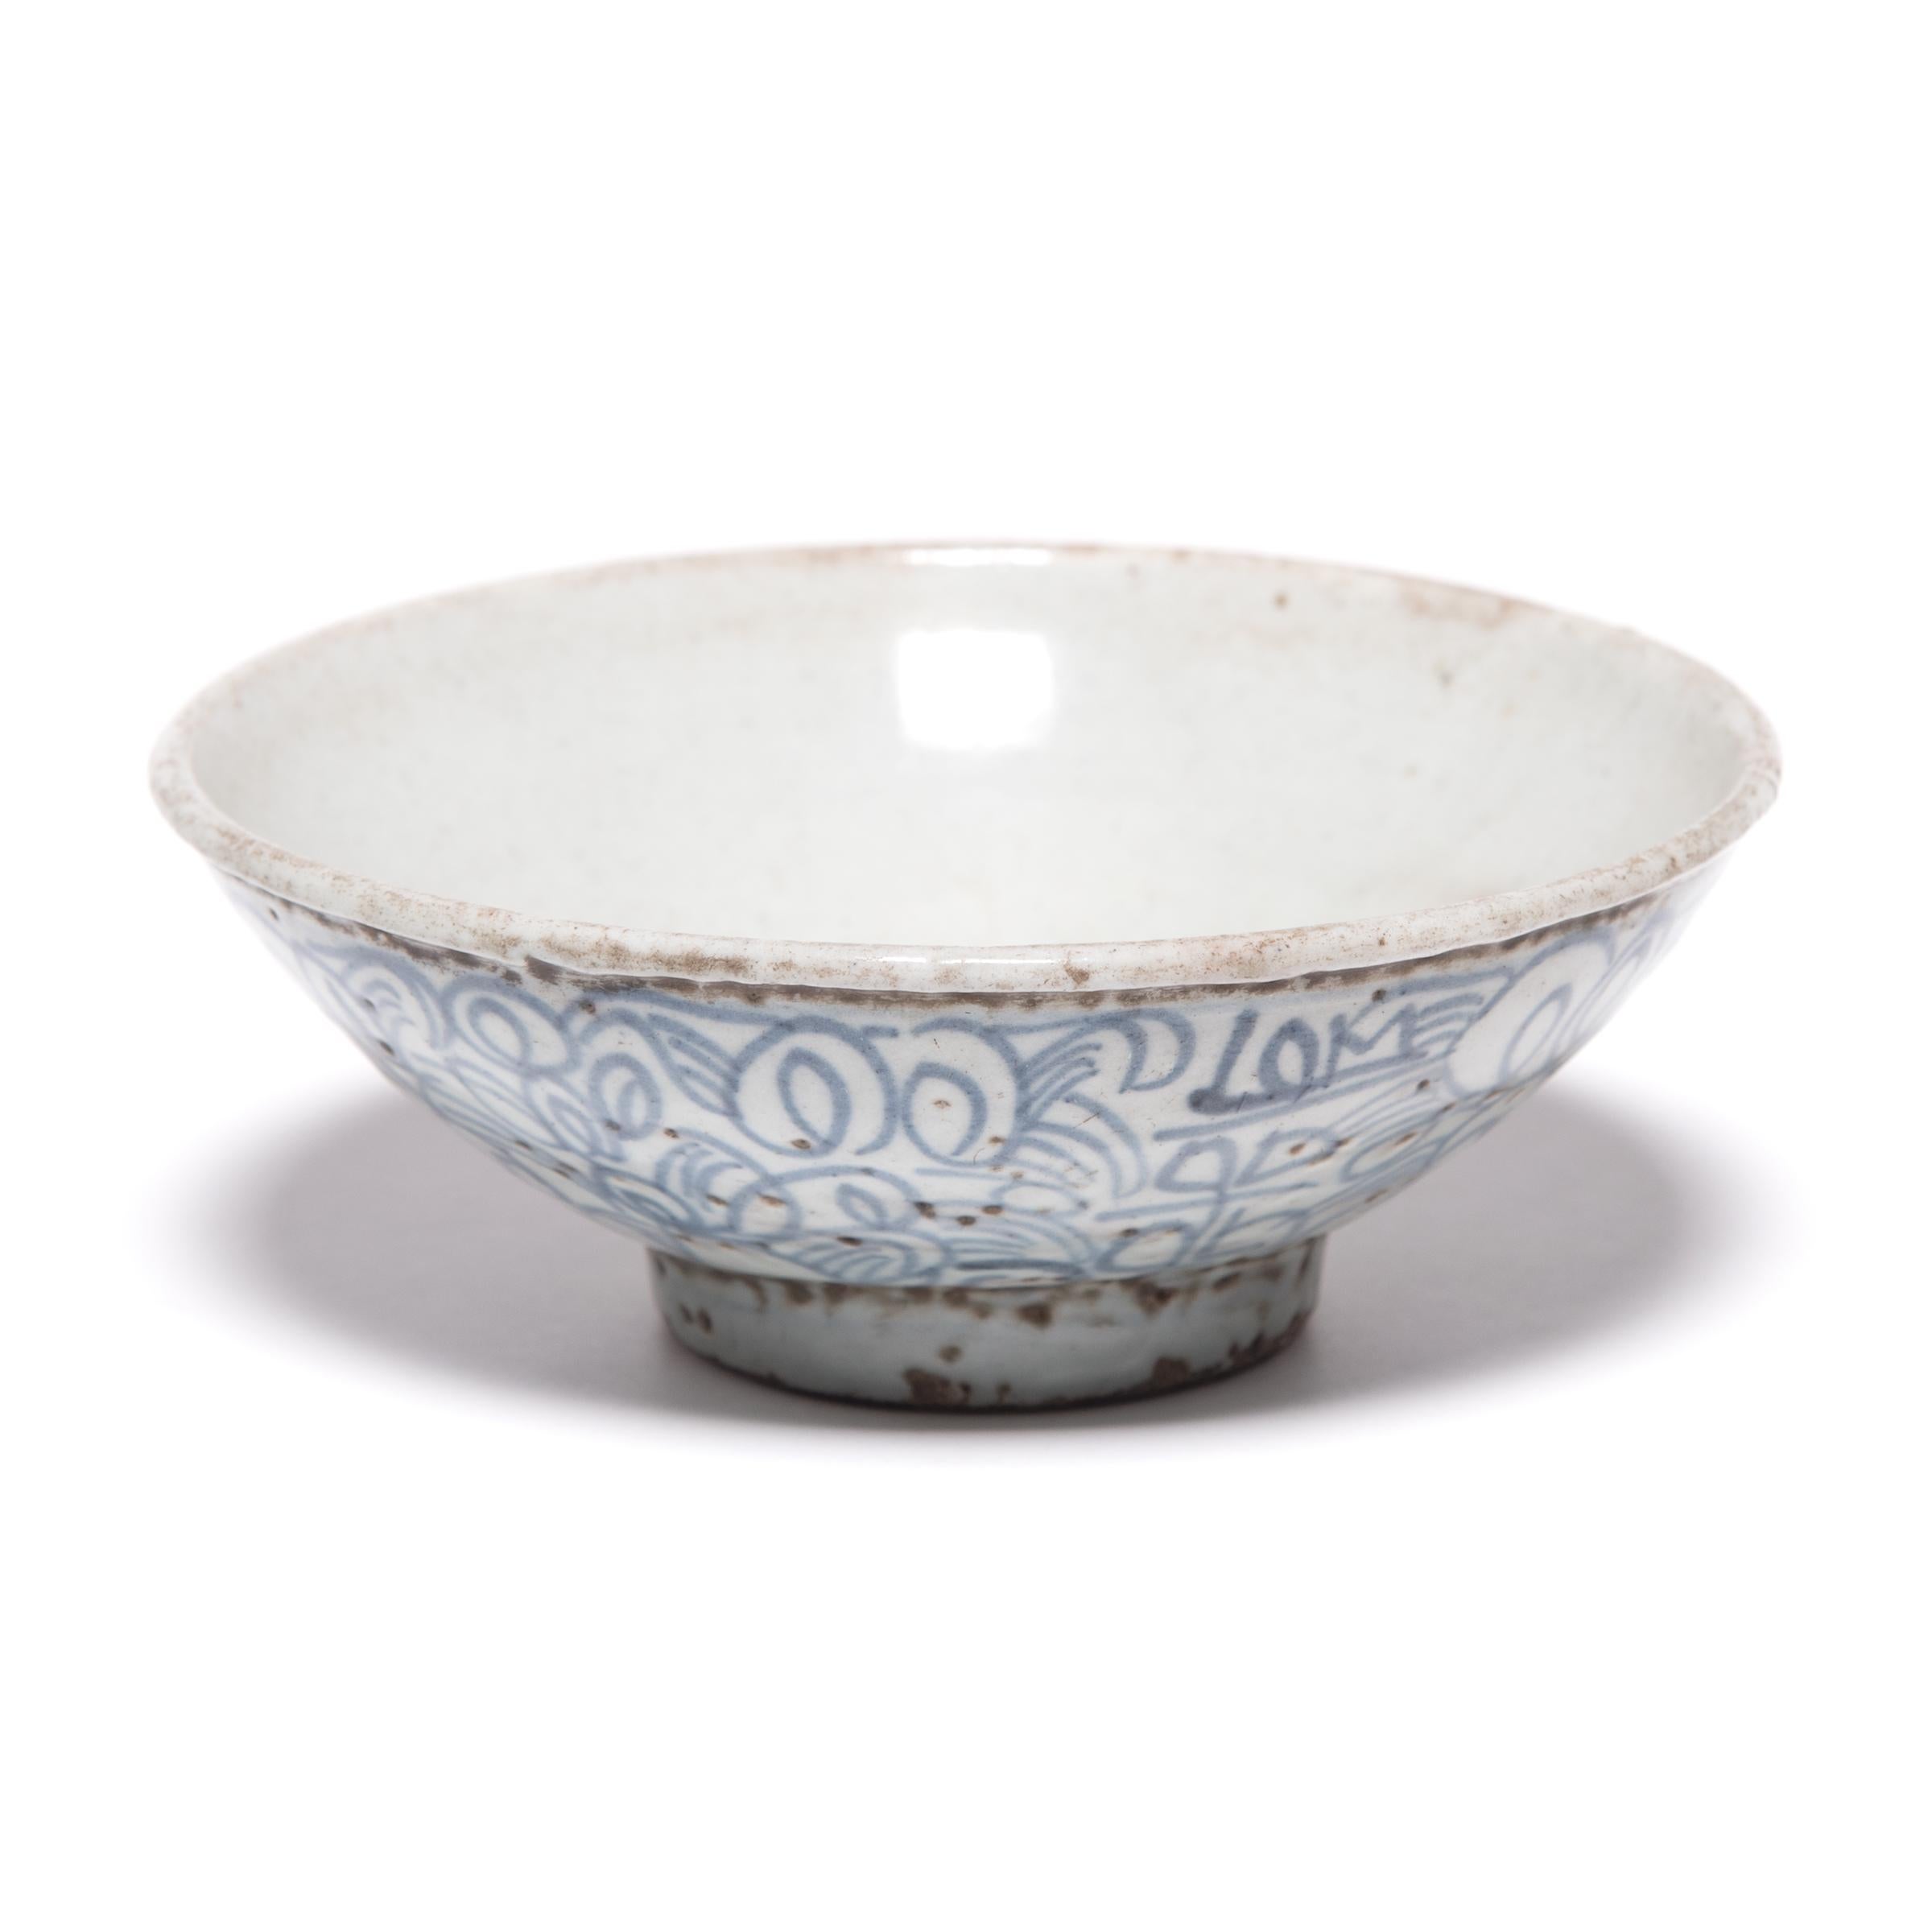 Ce bol sur pied de la fin du XIXe siècle aurait été offert par des commerçants chinois voyageant le long de la route de la soie en échange d'épices ou de pierres précieuses. Les artisans chinois qui l'ont peint à la main avec des volutes, des